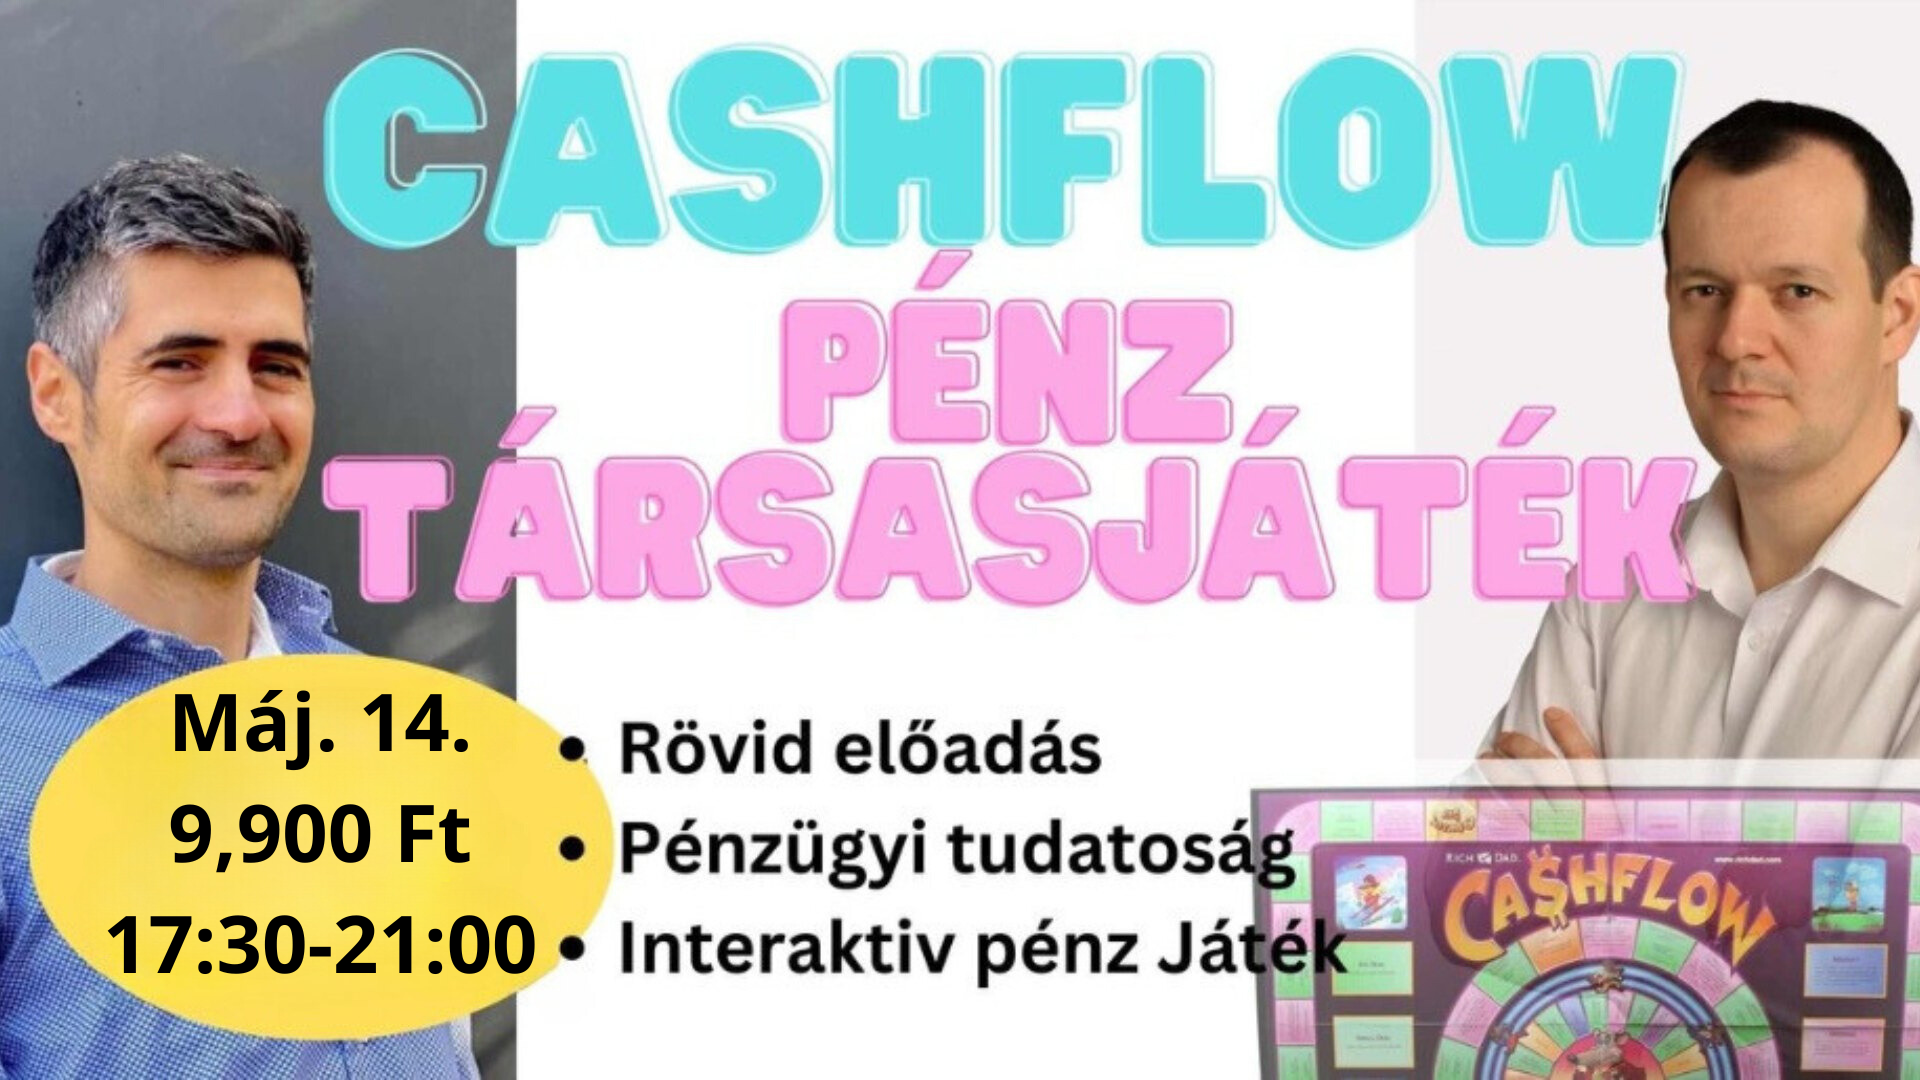 Cashflow Társasjáték est